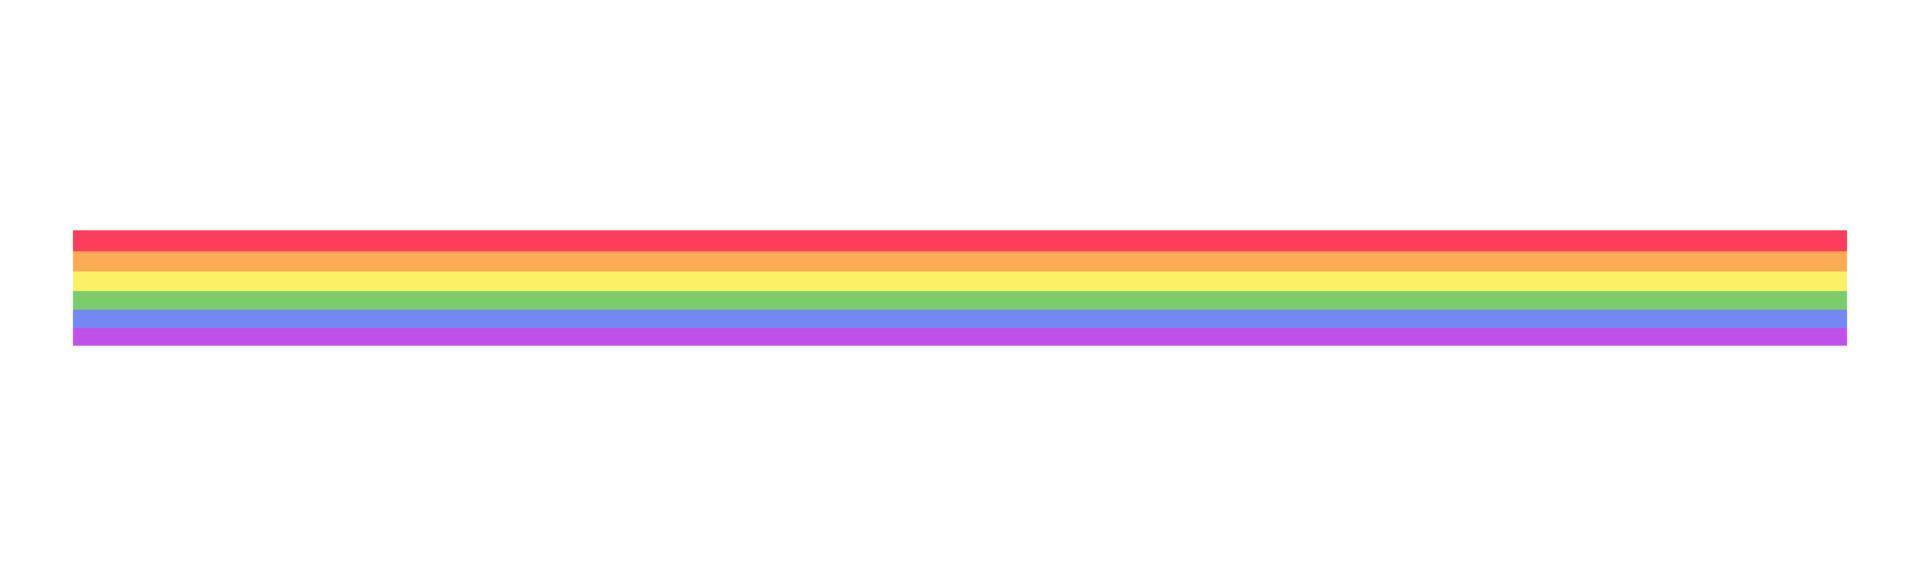 arco Iris bandeira fronteira. orgulho mês divisor simples vetor ilustração clipart